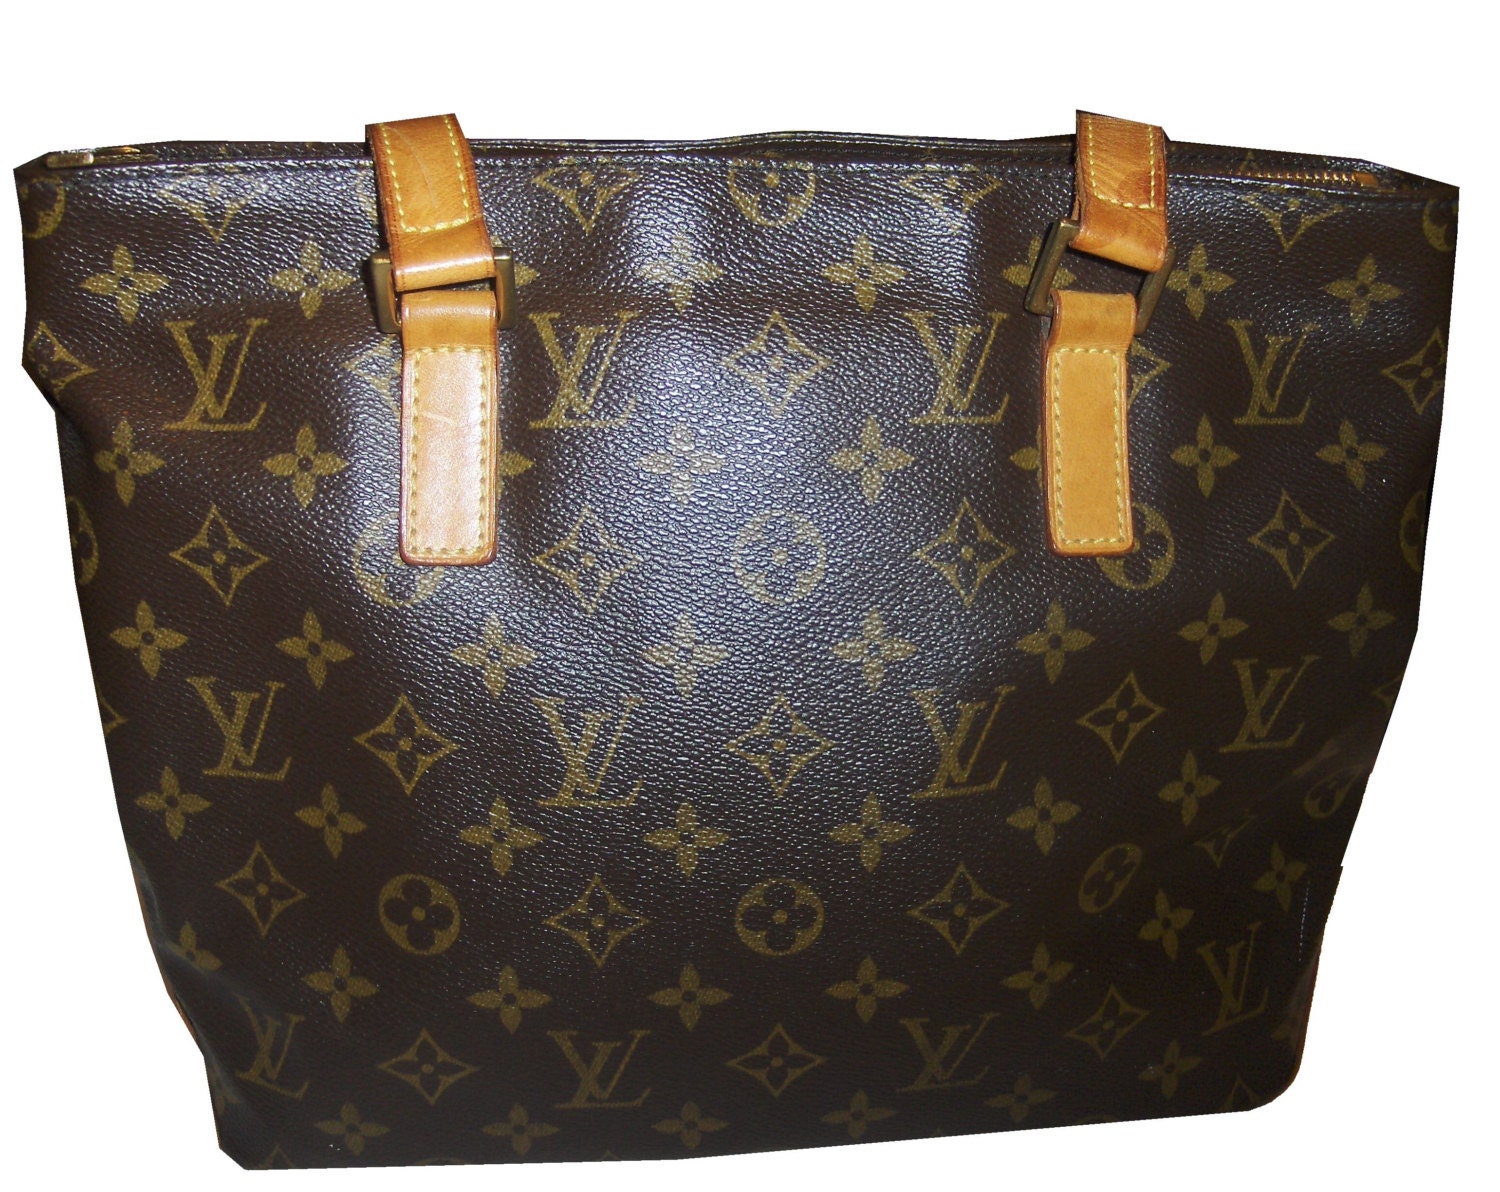 Authentic Louis Vuitton Handbag/ Signature Logo Design/ Medium